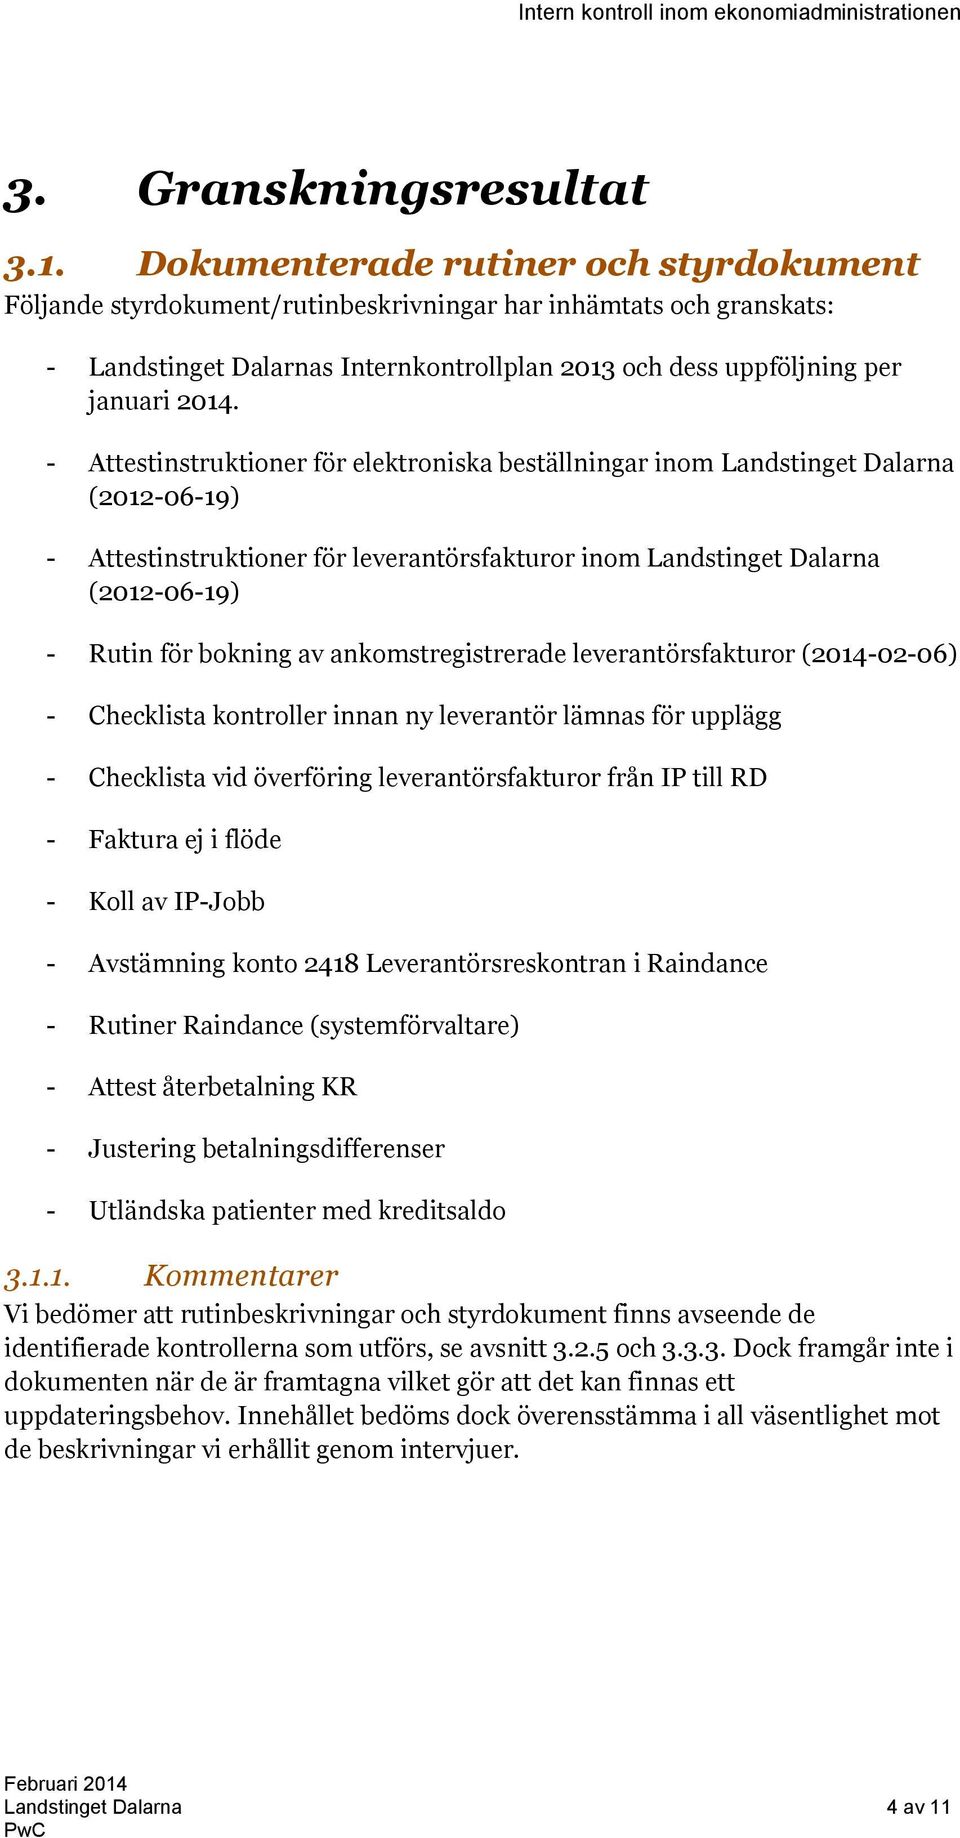 - Attestinstruktioner för elektroniska beställningar inom Landstinget Dalarna (2012-06-19) - Attestinstruktioner för leverantörsfakturor inom Landstinget Dalarna (2012-06-19) - Rutin för bokning av